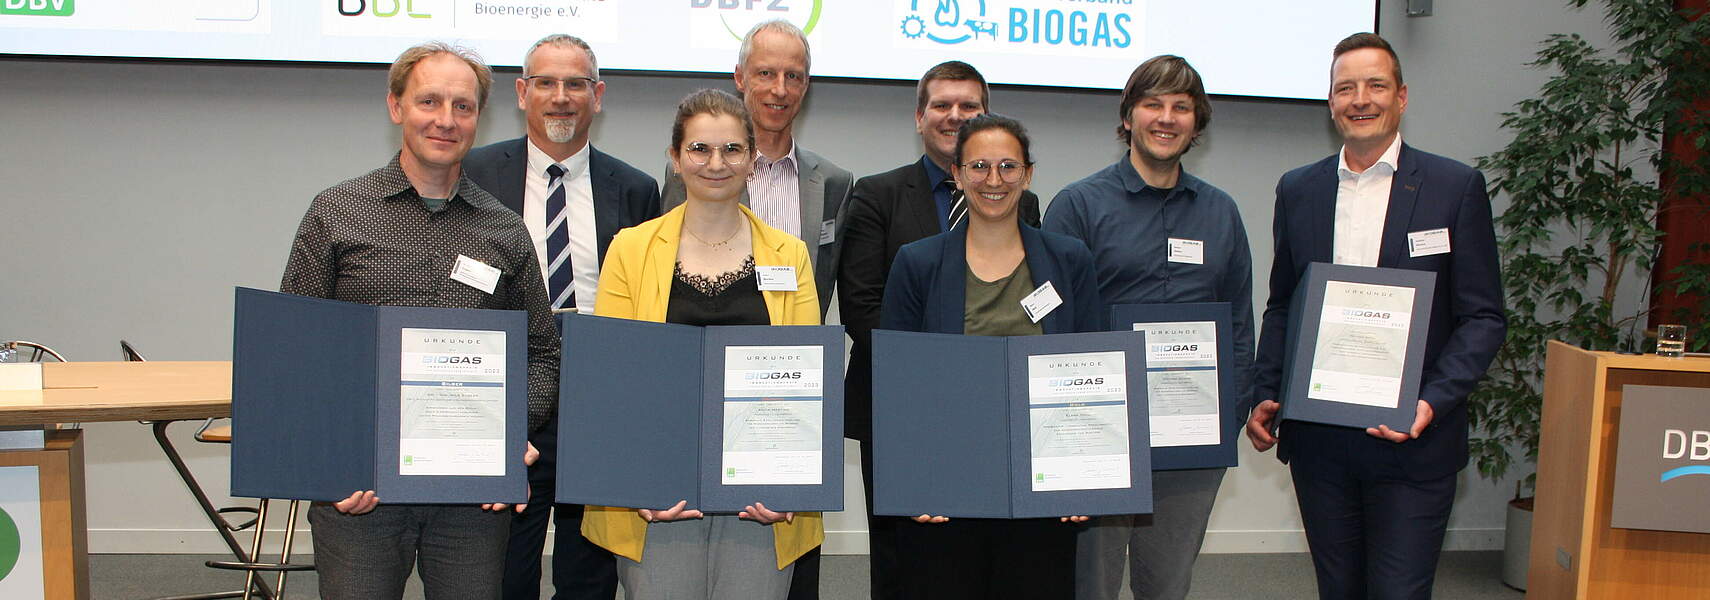 Frische Ideen für Biogas prämiert